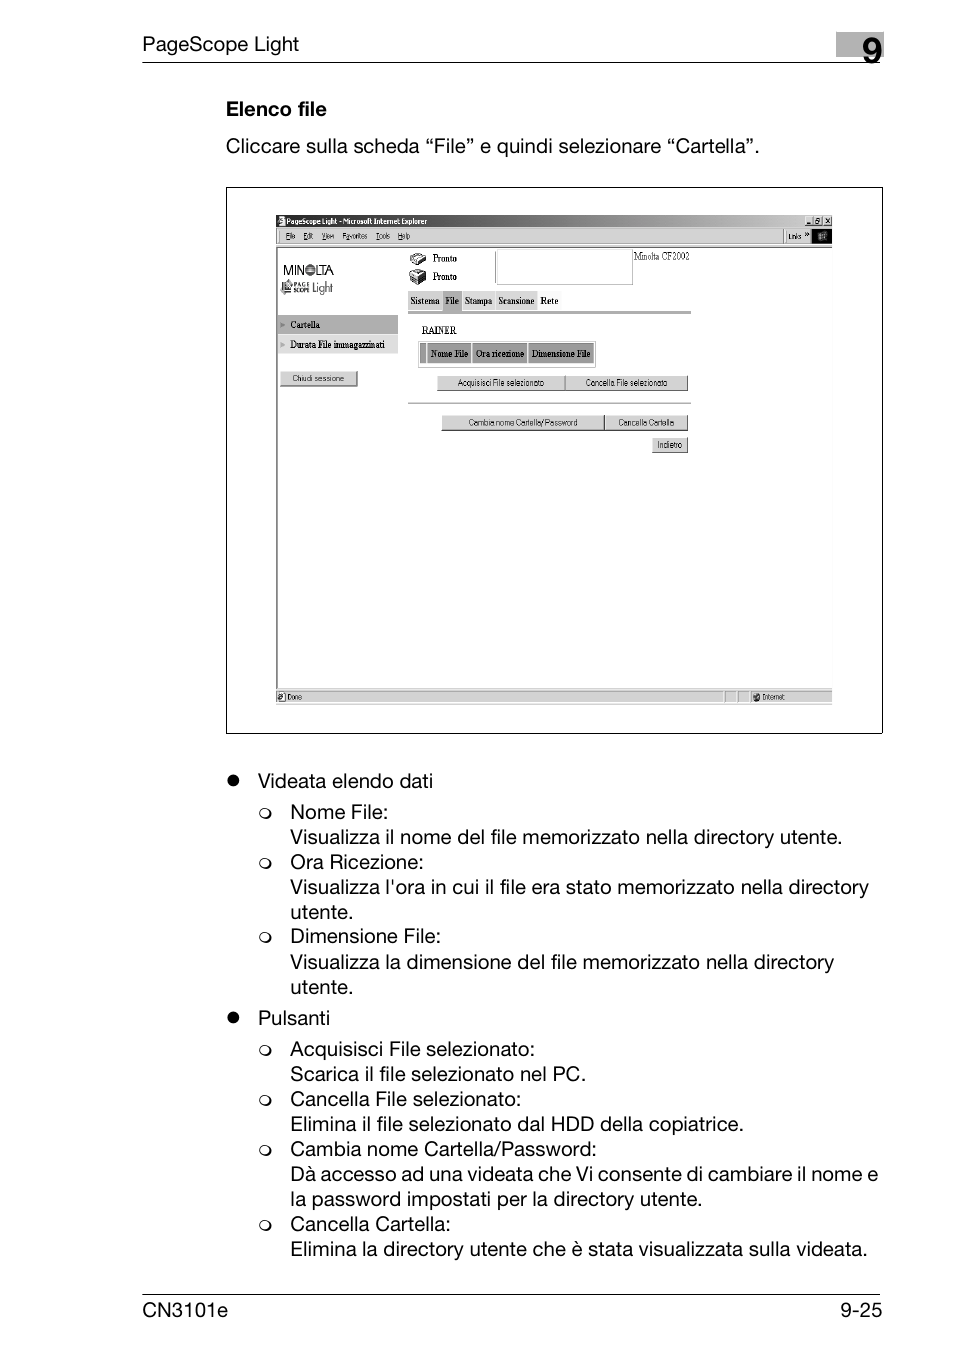 Elenco file, Elenco file -25 | Konica Minolta CN3101e Manuale d'uso | Pagina 191 / 242